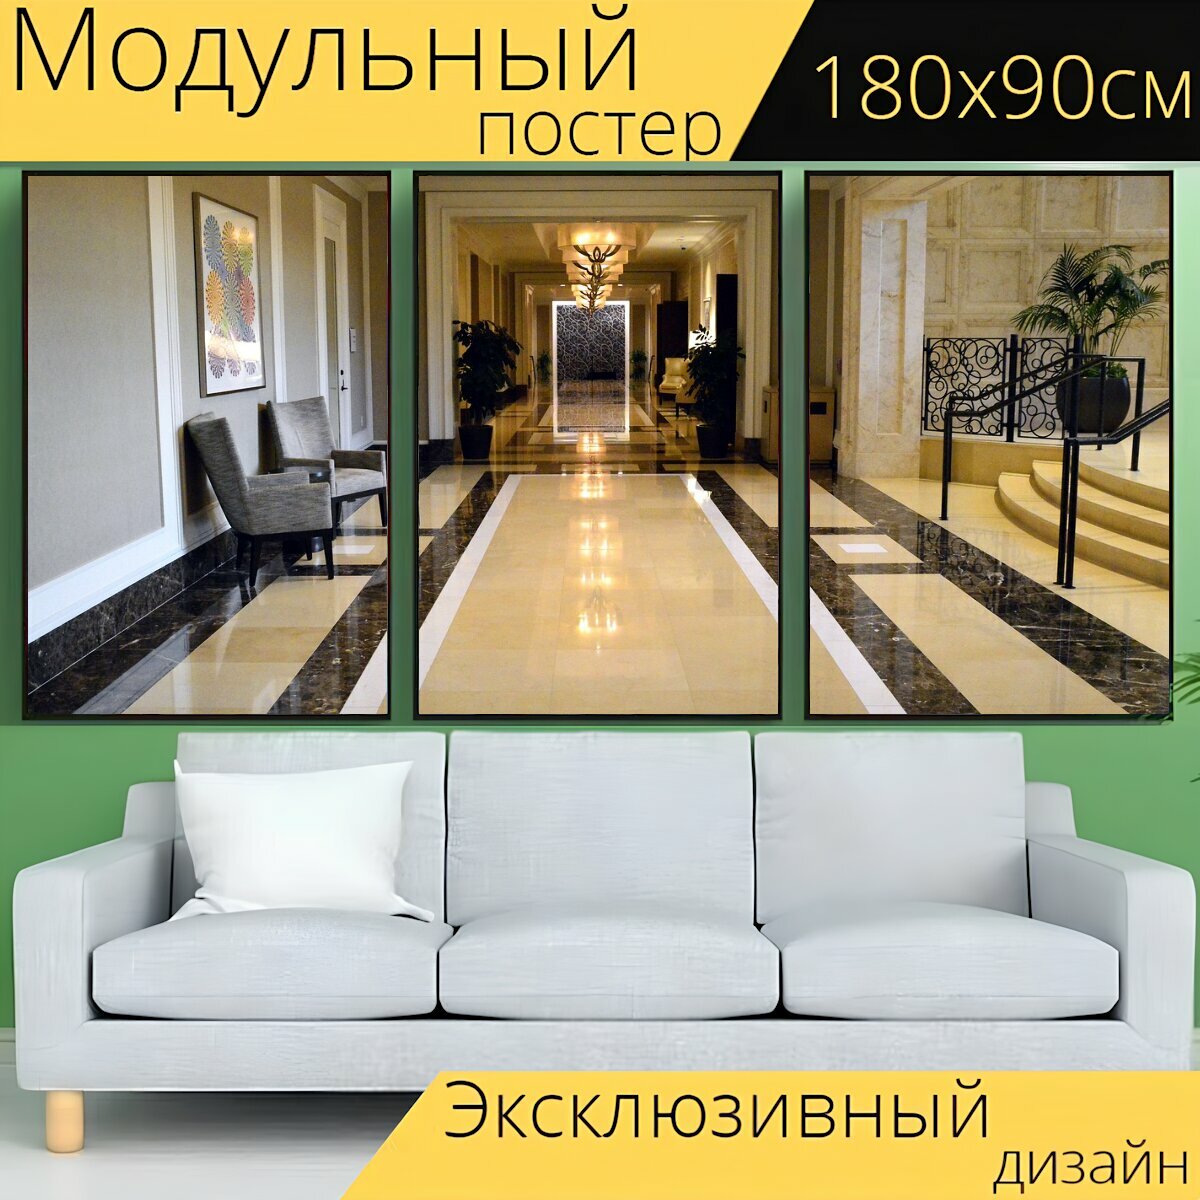 Модульный постер "Отель, роскошь, лобби" 180 x 90 см. для интерьера